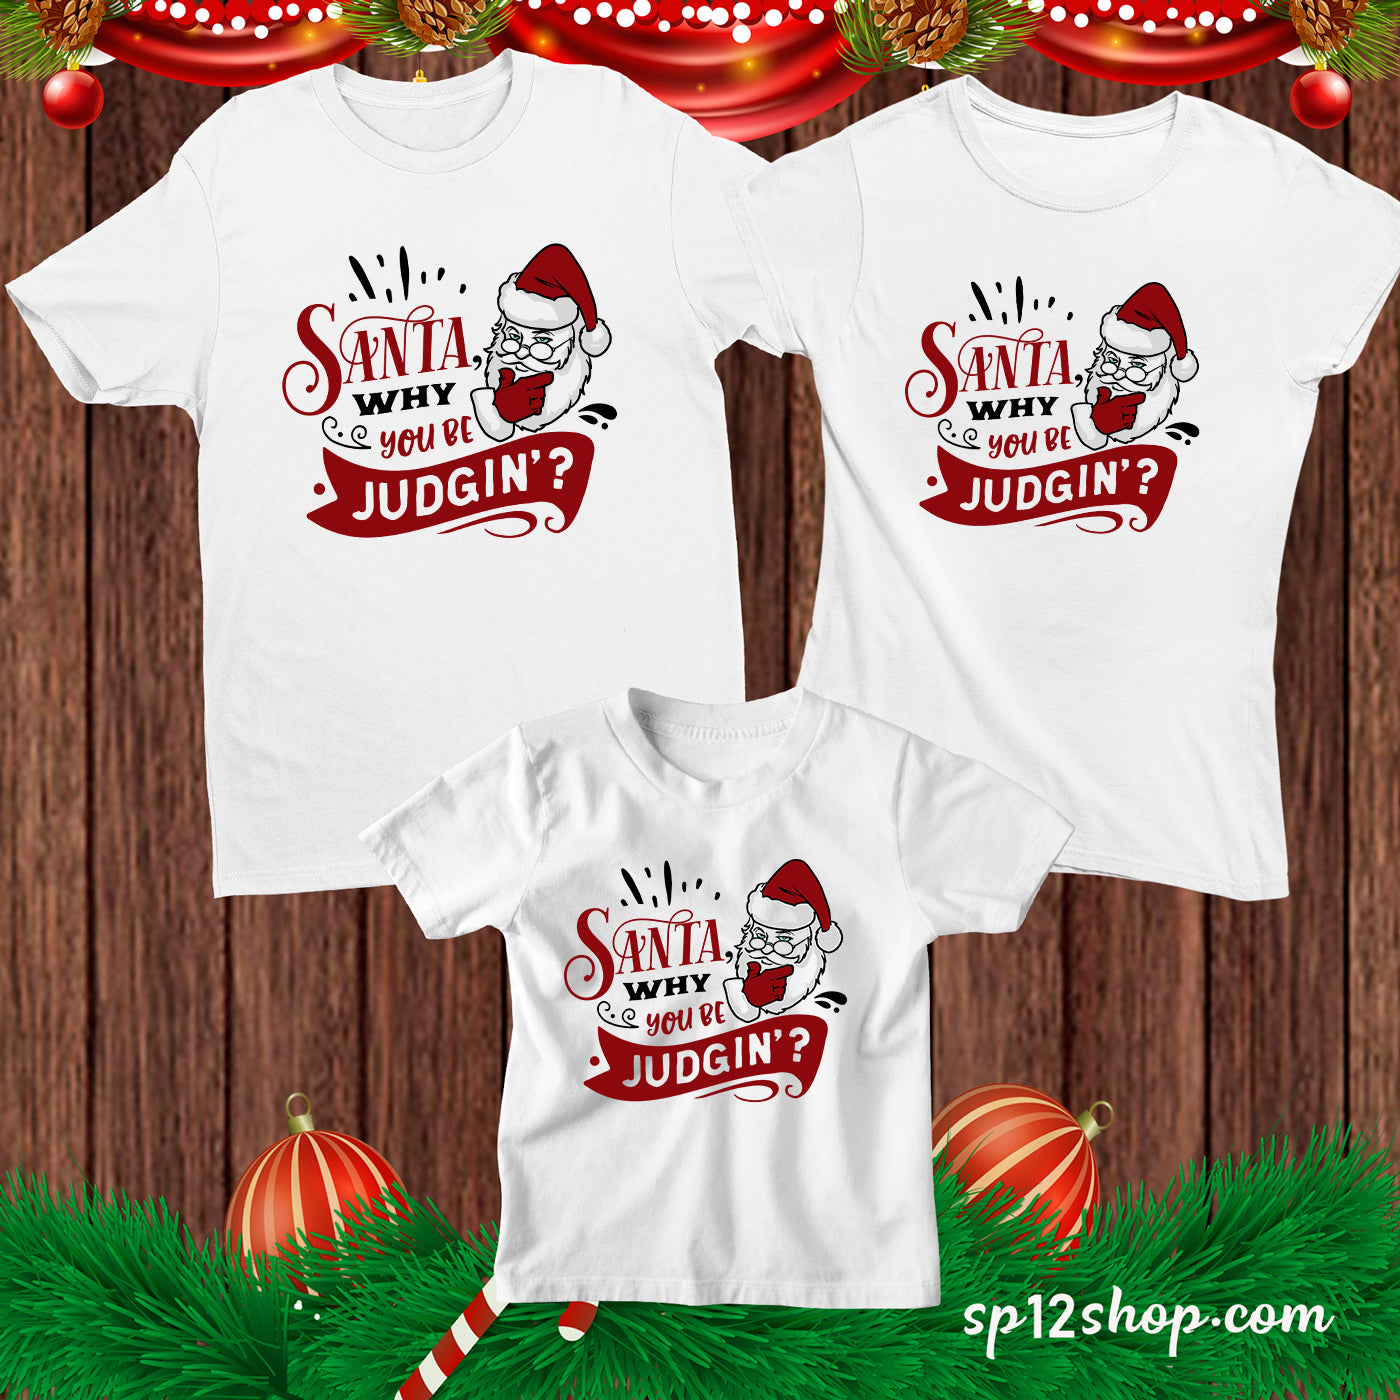 Santa Why You Be Judgin' Funny Christmas T shirt 